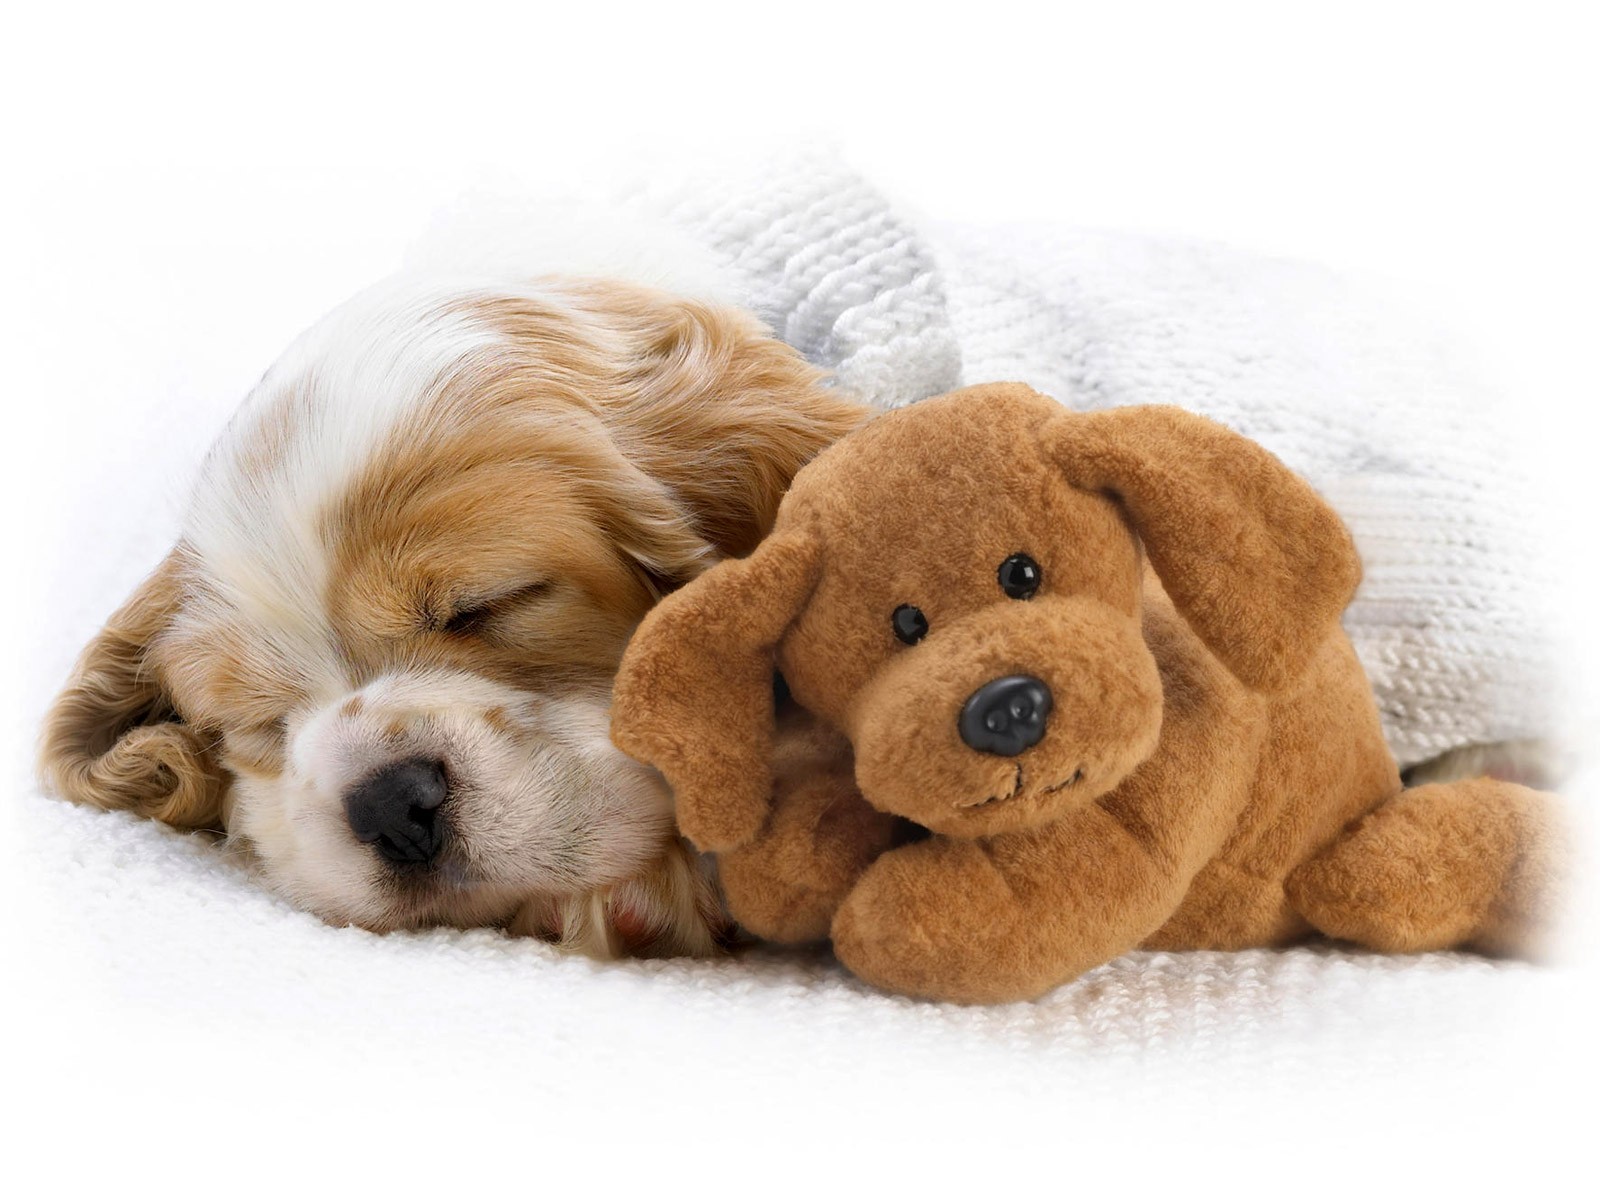 puppy-sleeping-with-teddy-bear.jpg